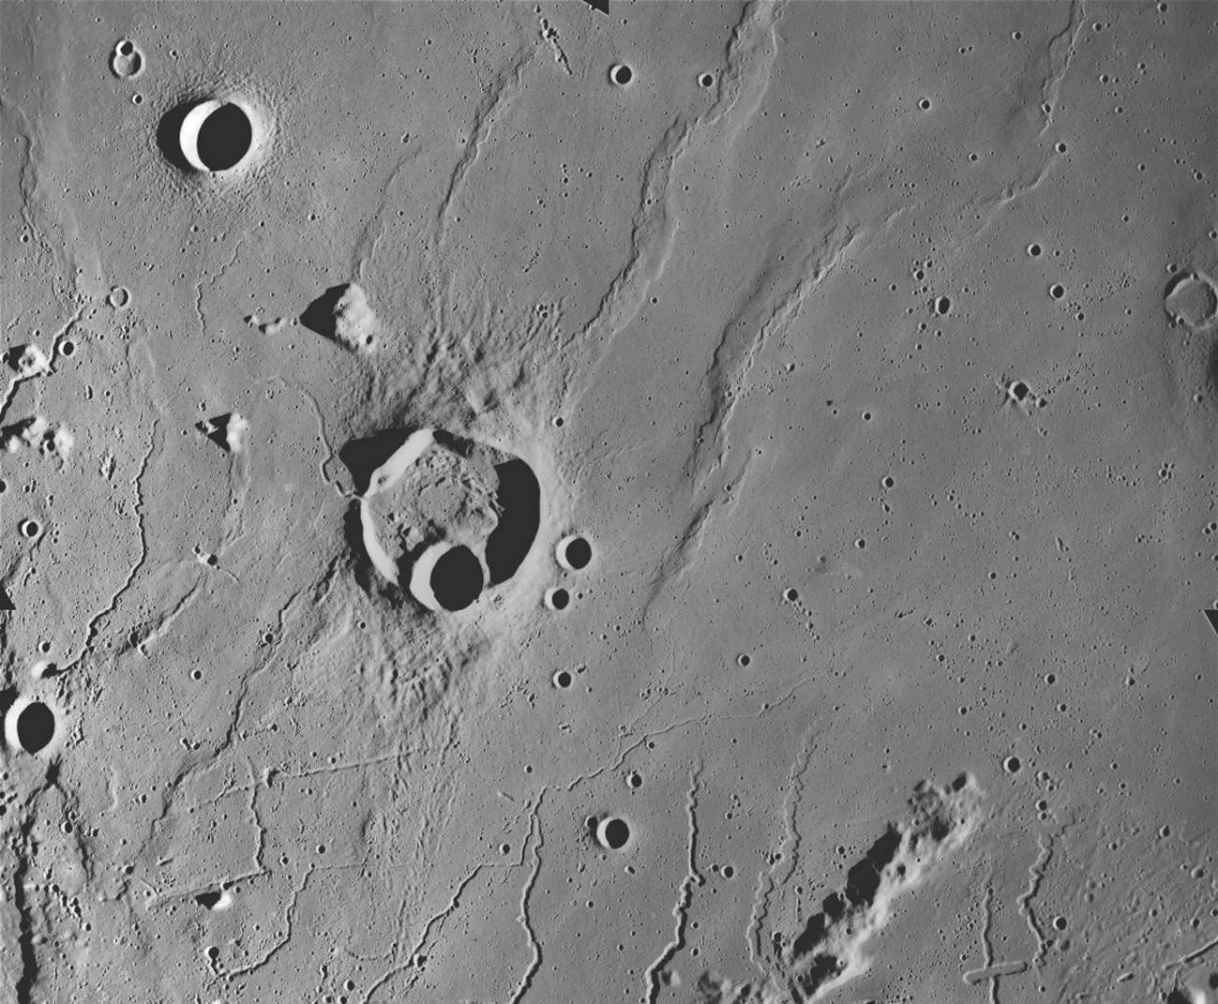  “阿波罗15号”拍摄的克里奇坑（Kreiger Crater，图中央偏左上），它的下方是有月溪，上方是皱脊